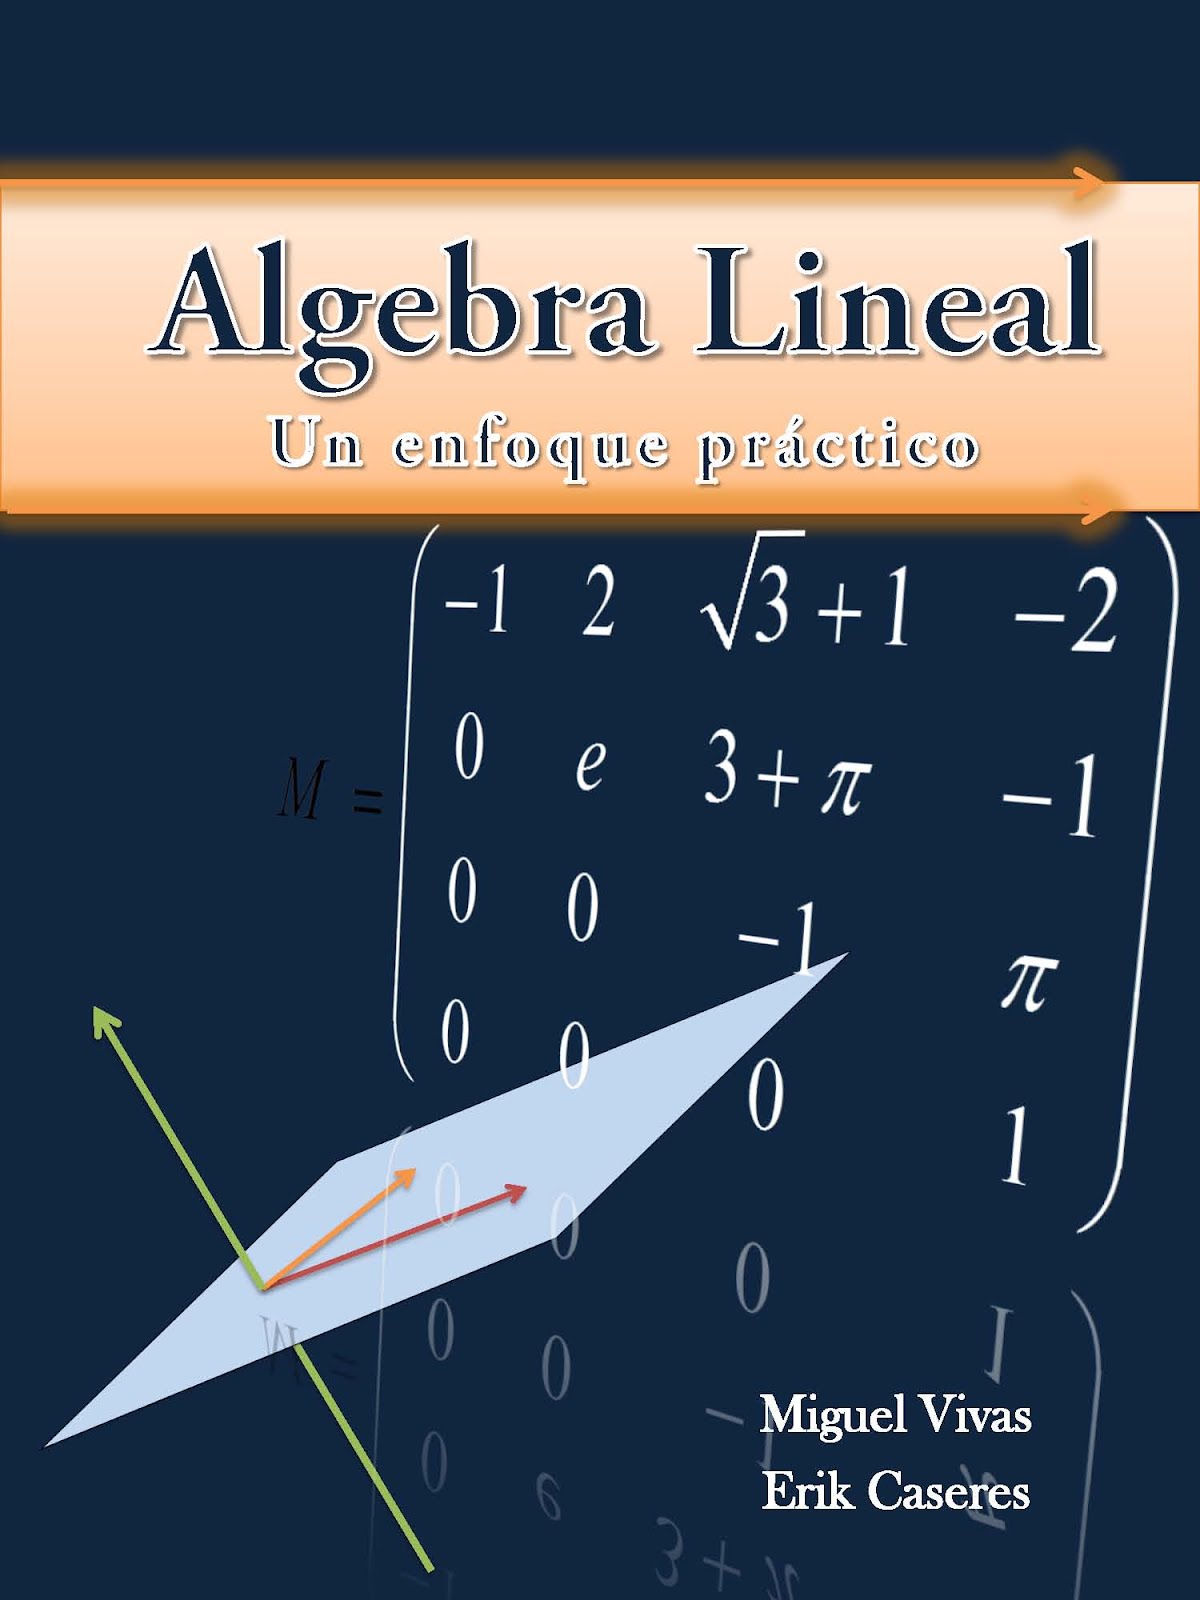 El Blog del Dr. Miguel Vivas C.: Curso de Matemática ,Precálculo, álgebra  lineal